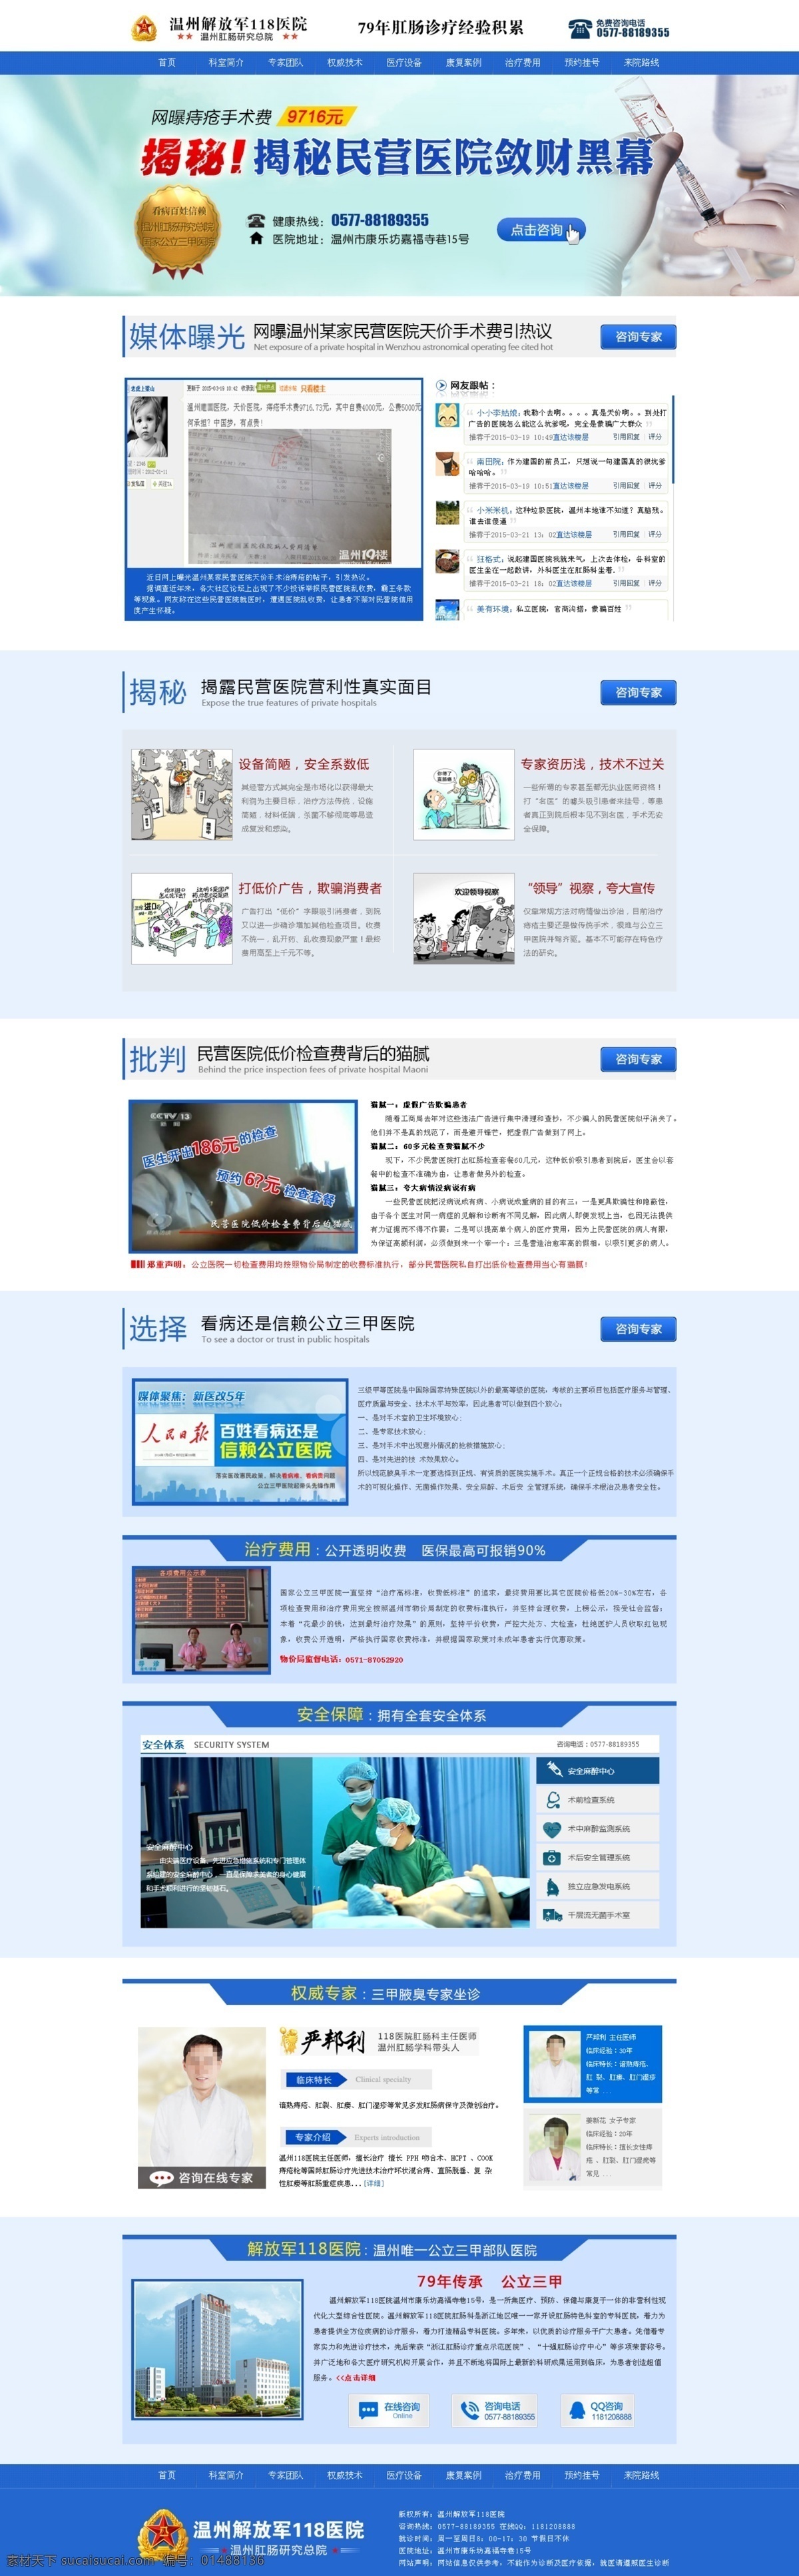 民营医院网站 在线客服 网站导航条 医疗 行业 网站 模板 蓝色 大气 企业网站 白色